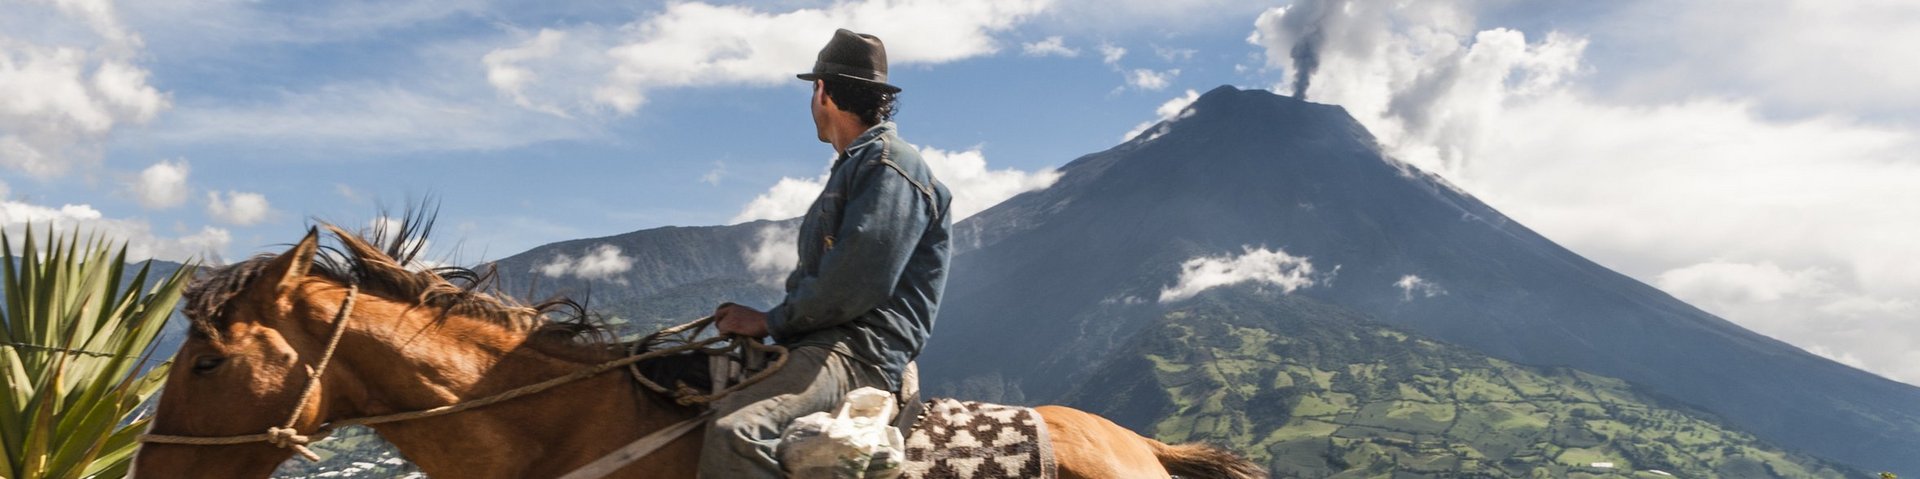 Einheimischer reitet auf seinem Pferd und im Hintergrund raucht es aus dem Vulkan Tungurahua